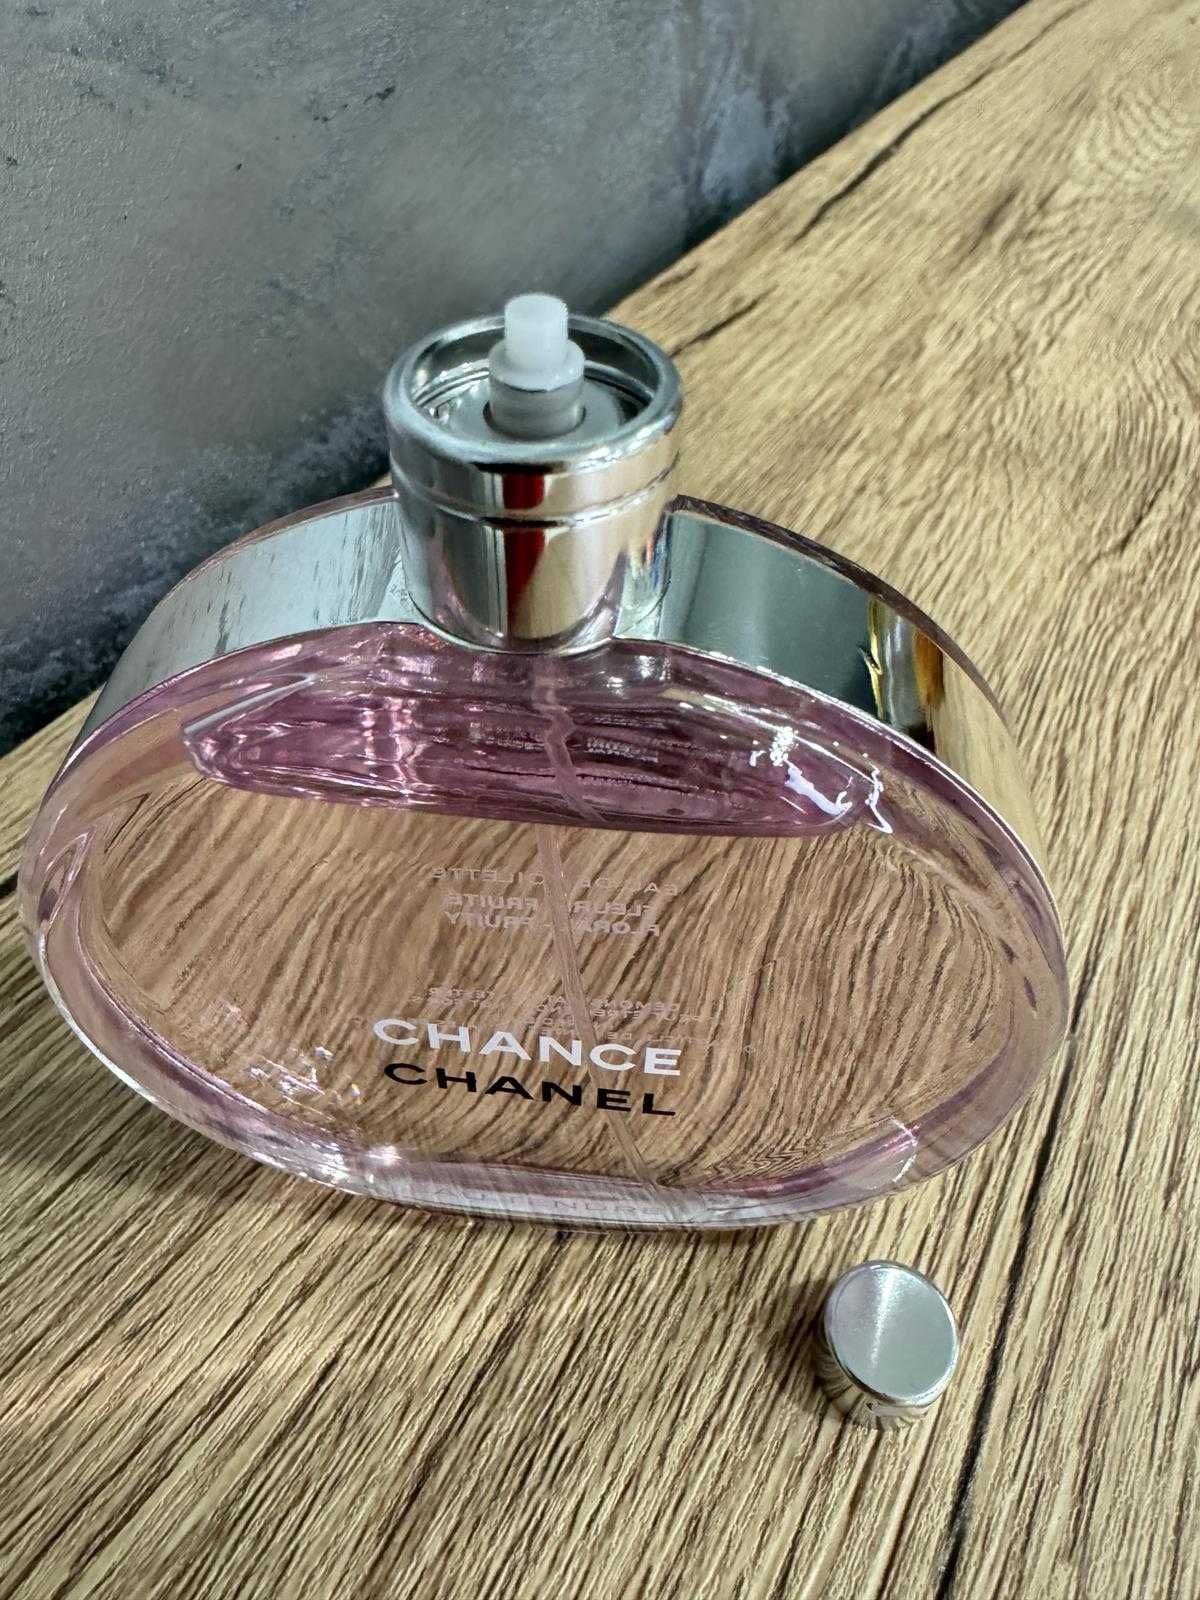 Chanel Chance 100ml, edt clasic, eau vive, eau tendre , 100% originale